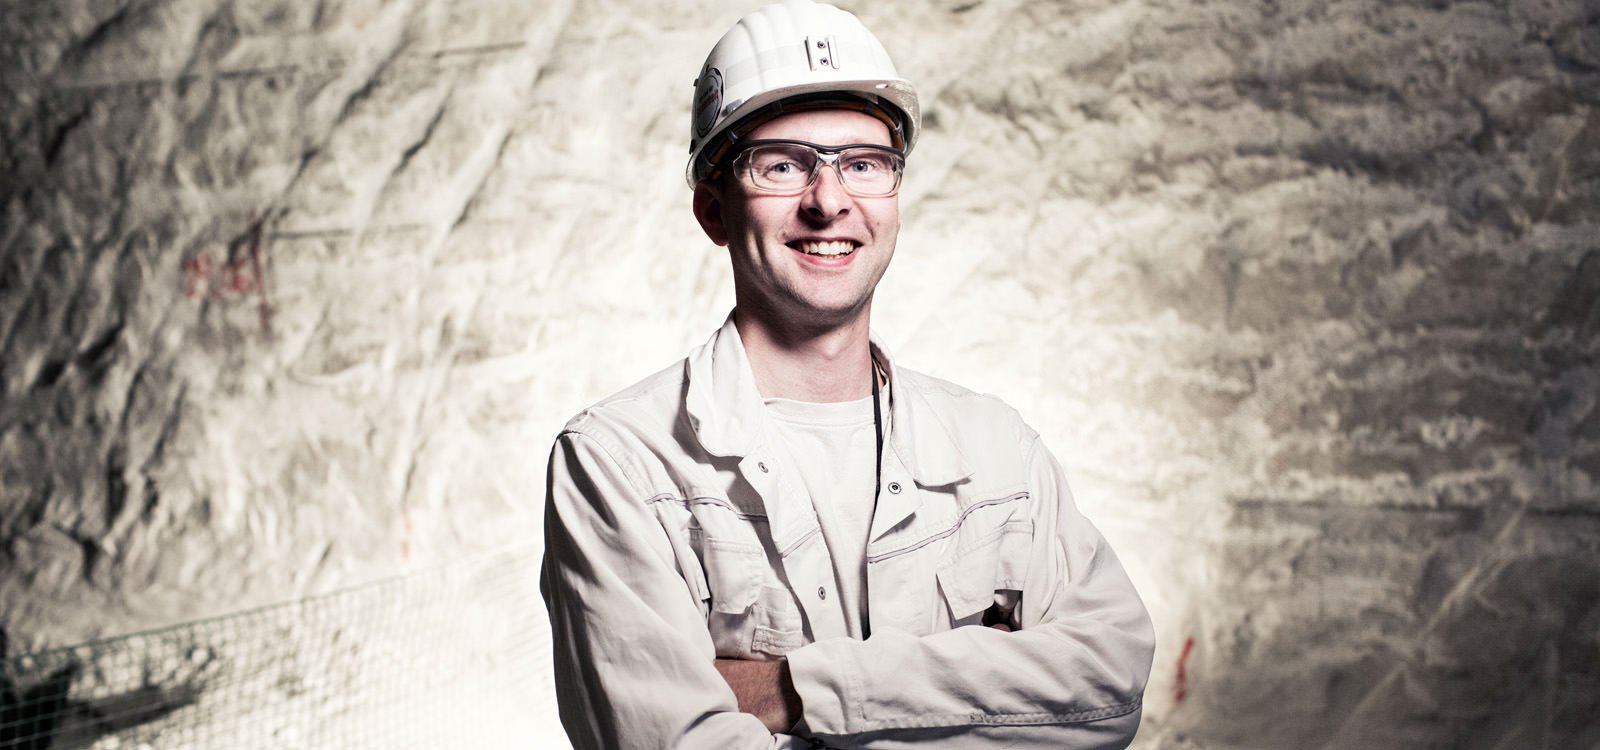 <p>В течение последних двух лет Ханс-Мартин Мюллер отвечает за подземные работы на соляном руднике esco в Бернбурге, Германия.</p>
